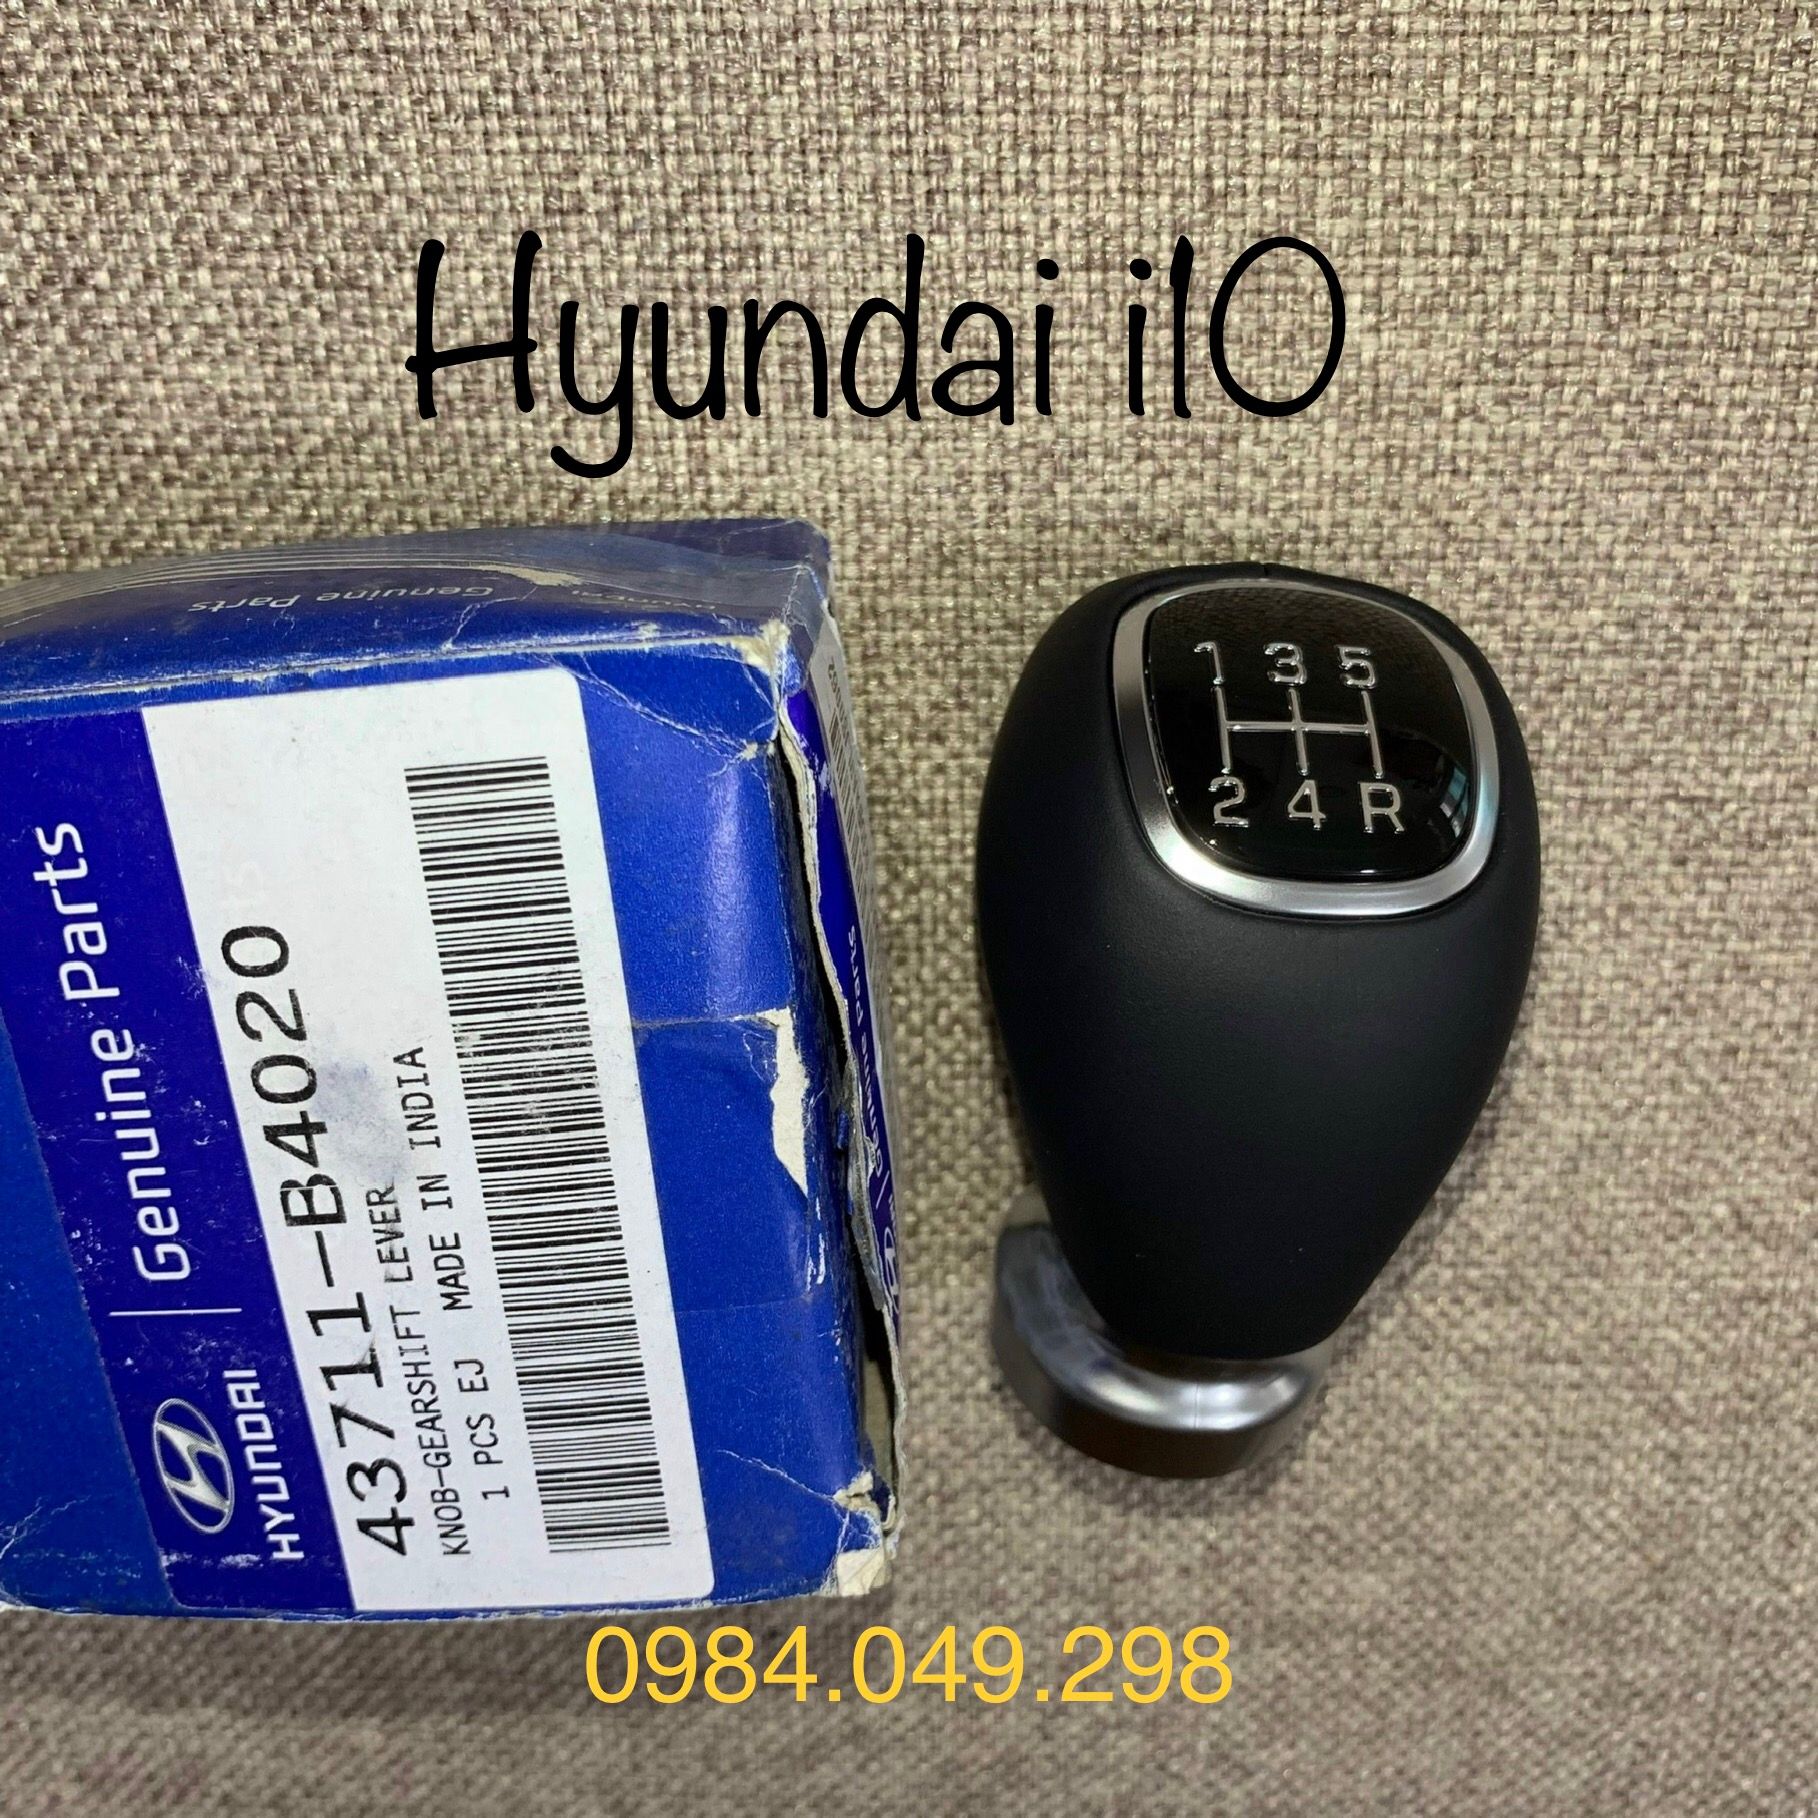 Tay nắm cần số Hyundai i10 đời 2015 chính hãng - Thienthanhauto.com